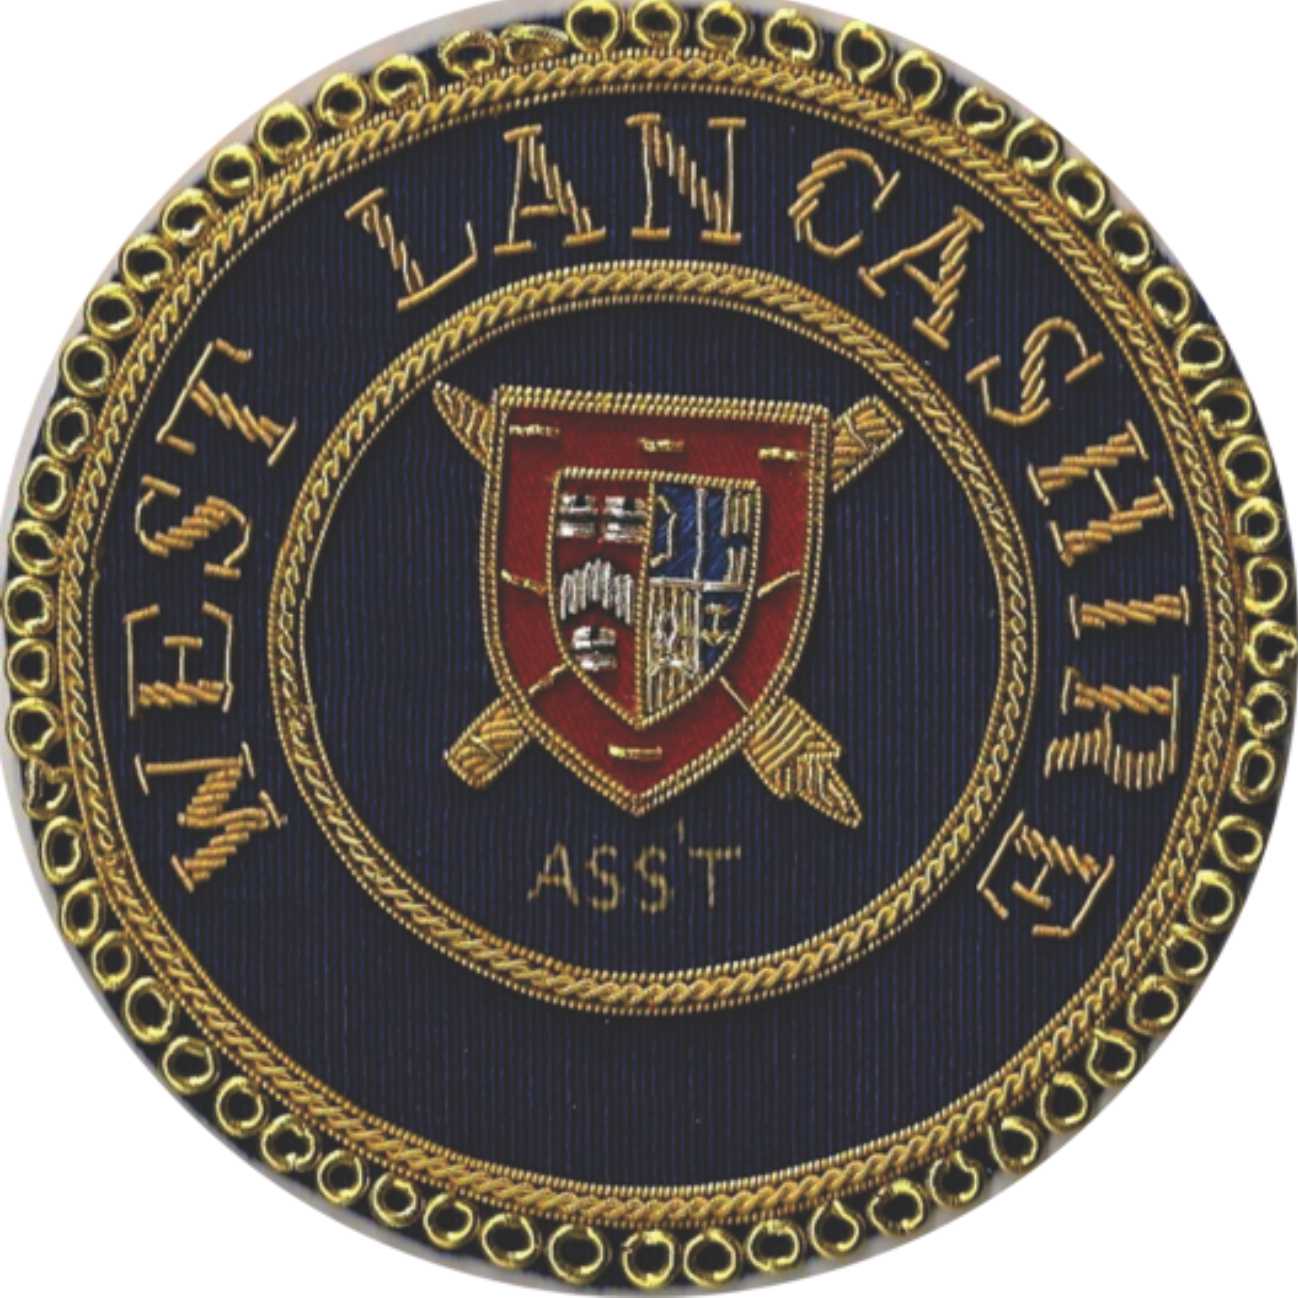  West Lancashire Masonic Badge